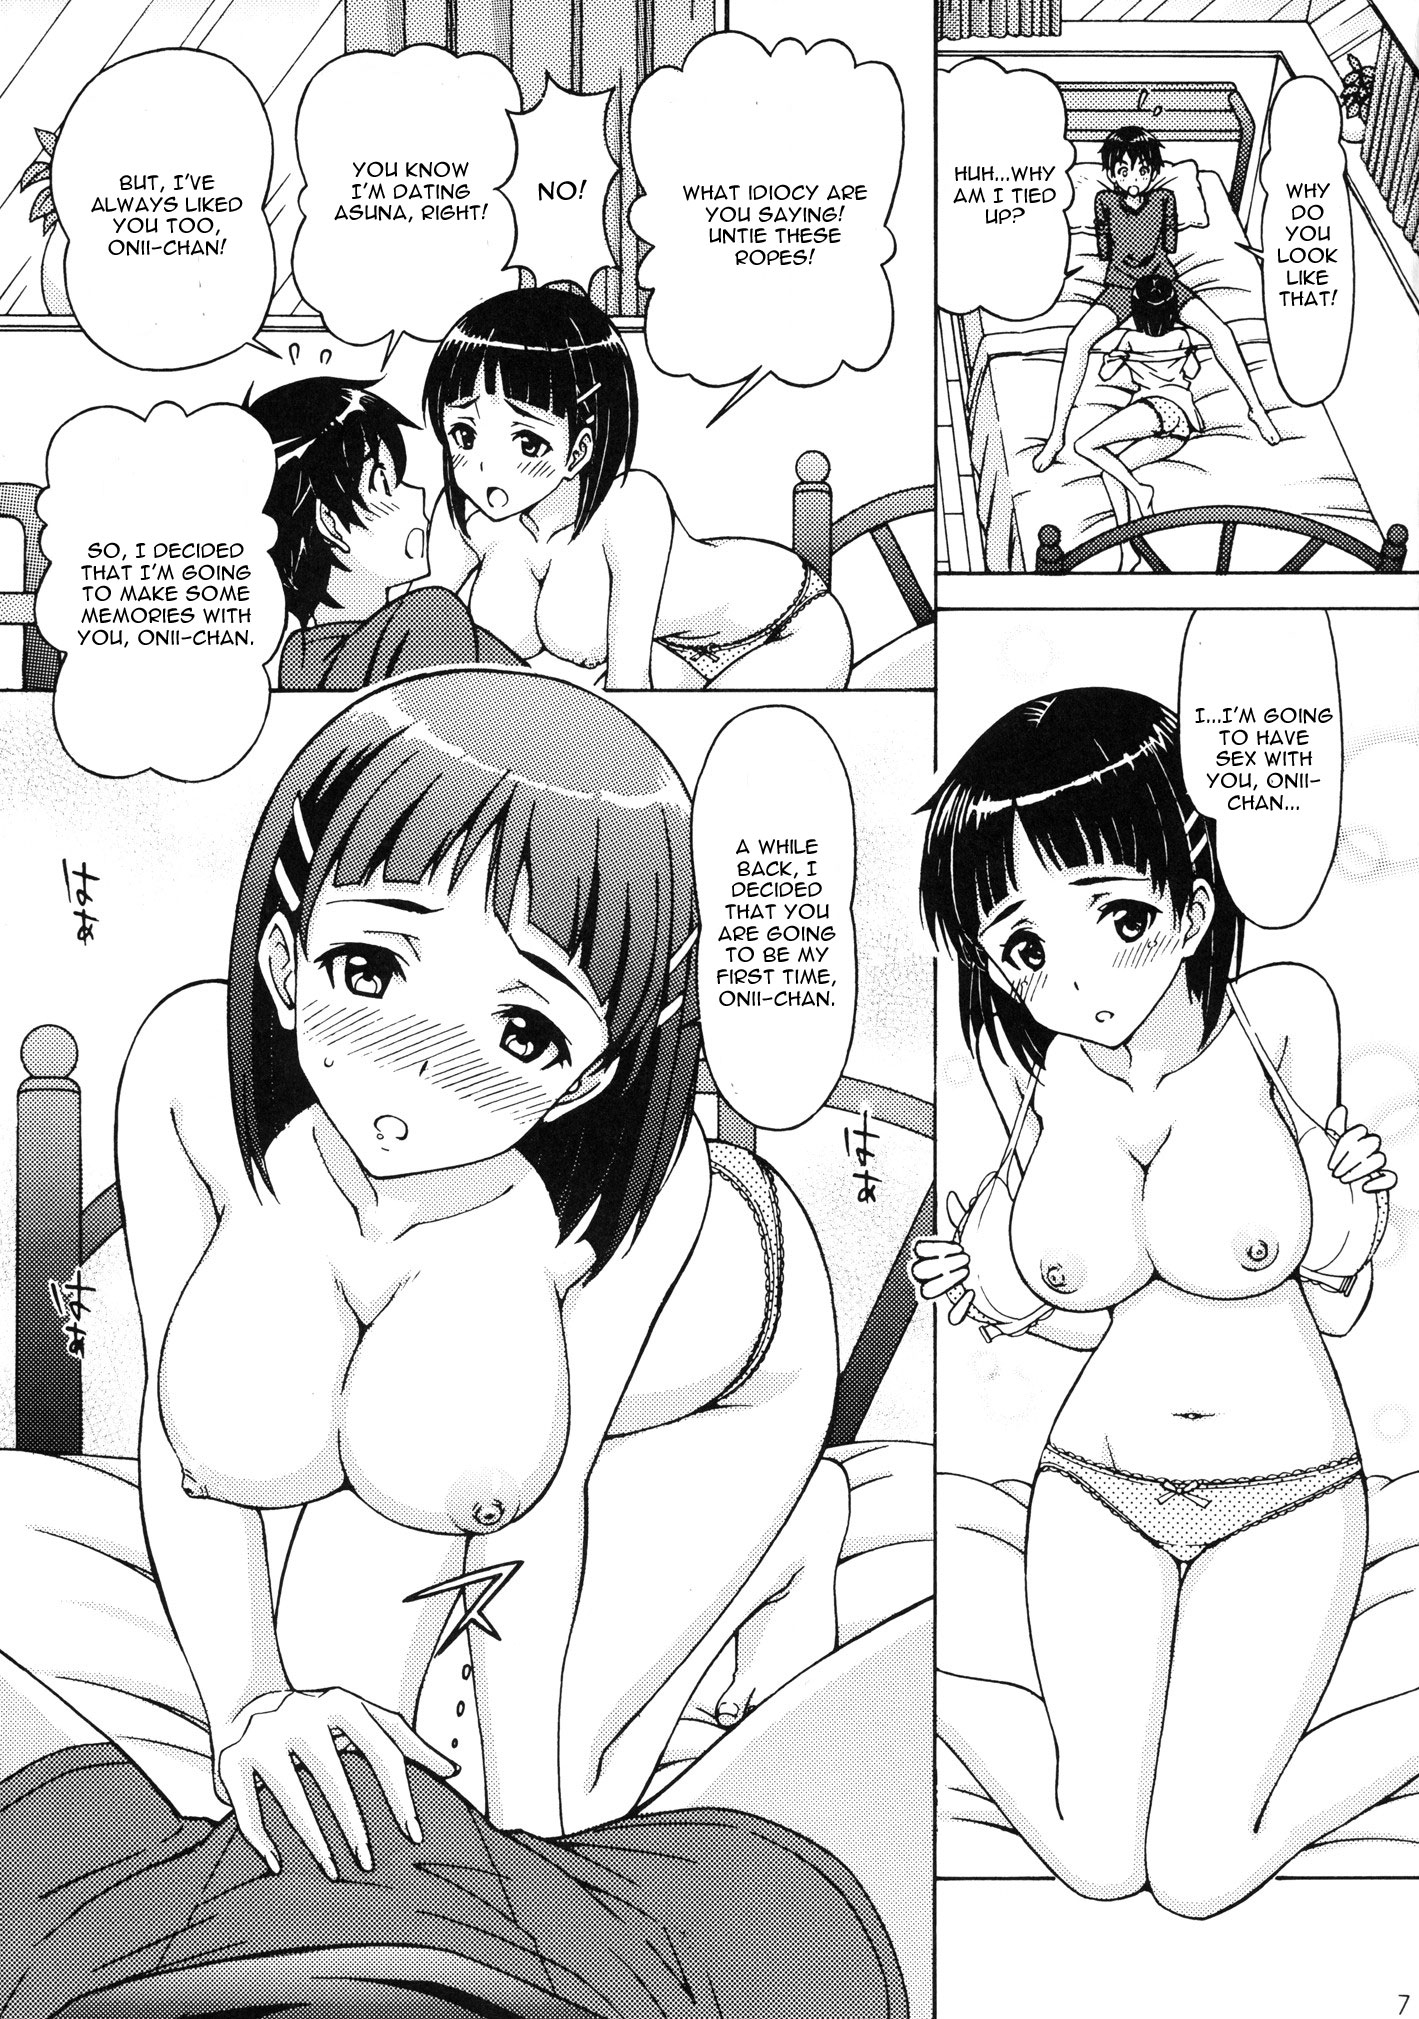 1419px x 2019px - suguha kirigaya incest kazuto kirigaya porn hentai pictures - XXXPicz